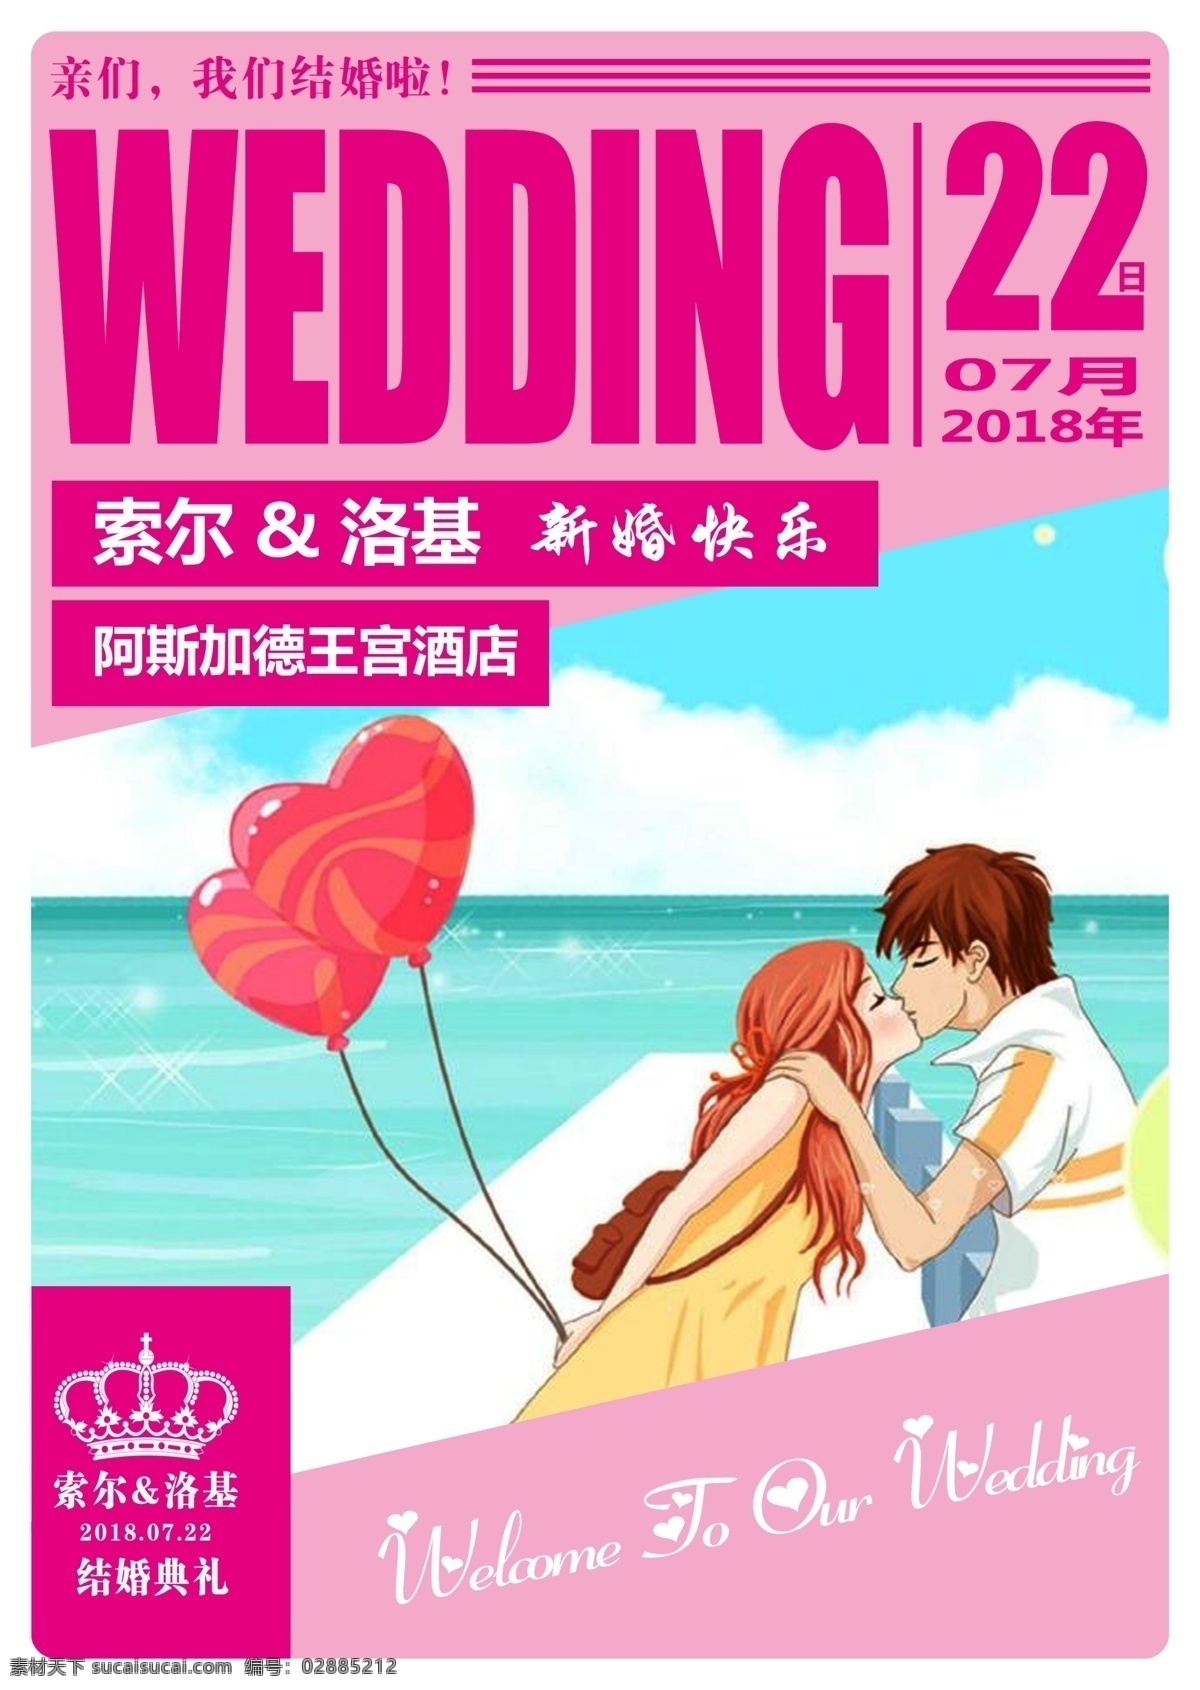 粉色 结婚 邀请 海报 粉色结婚海报 邀请海报 结婚邀请海报